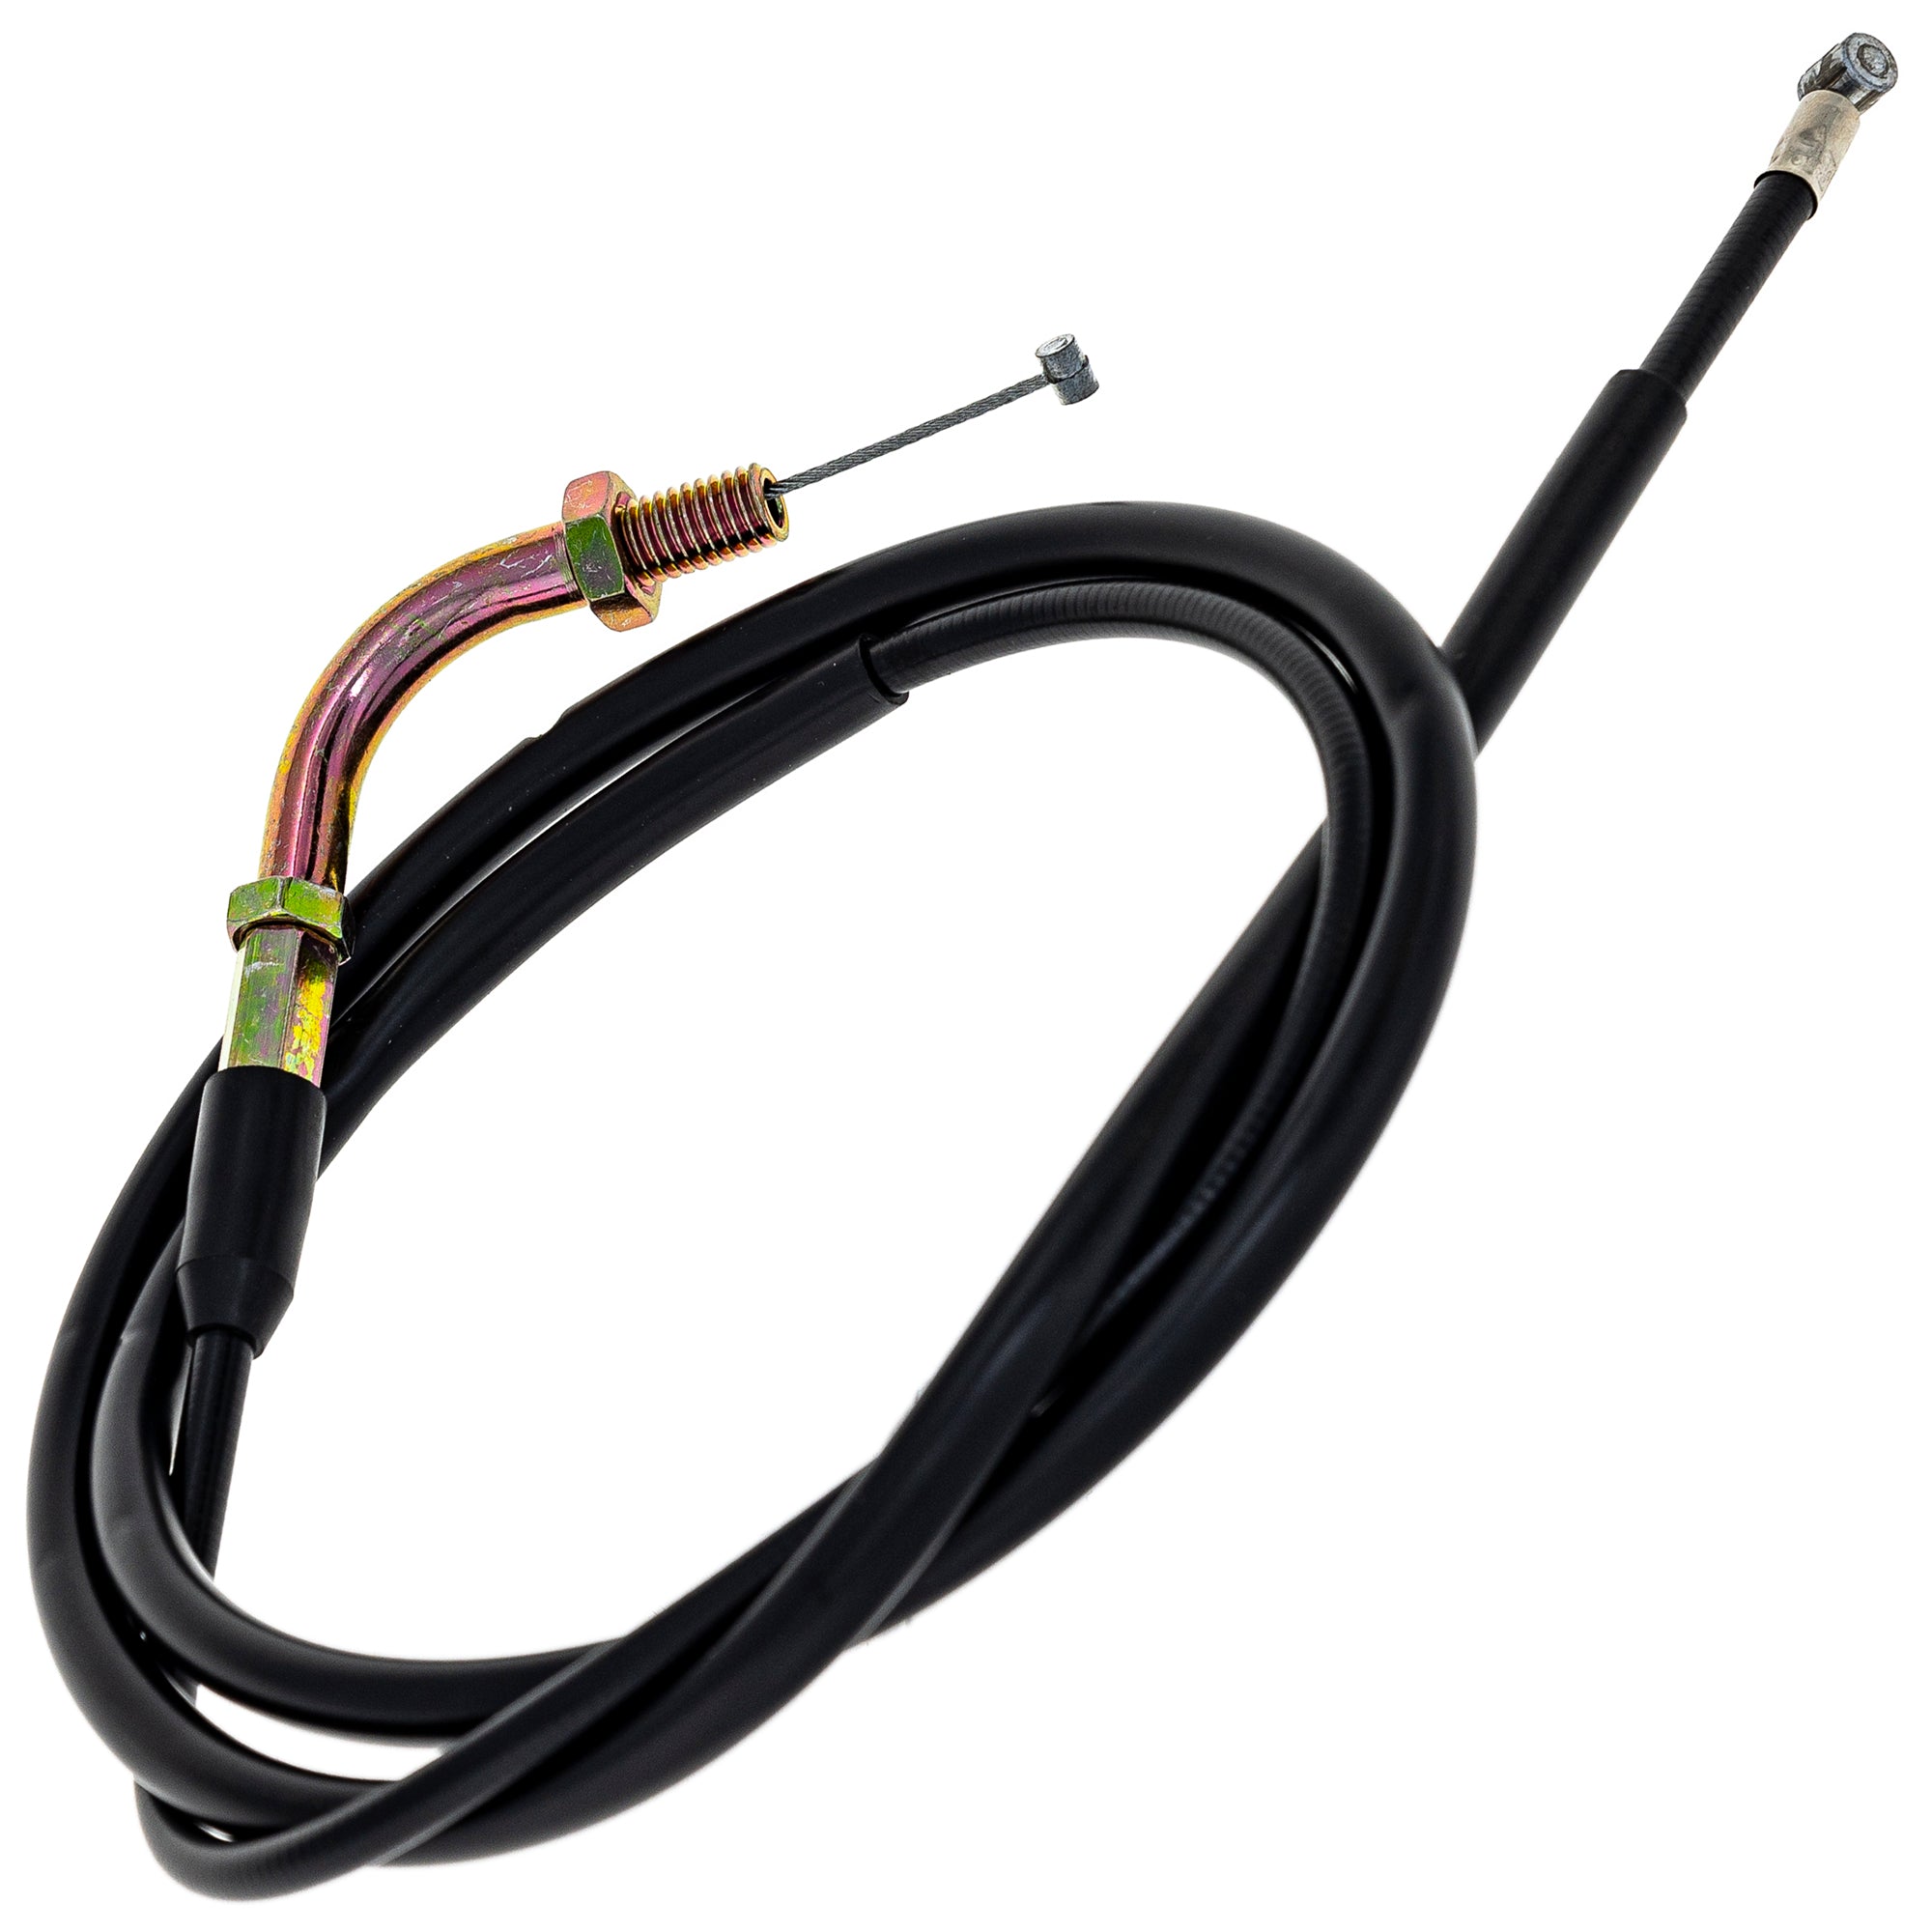 Choke Cable for Honda Goldwing 1200 GL1200 GL1200A GL1200I